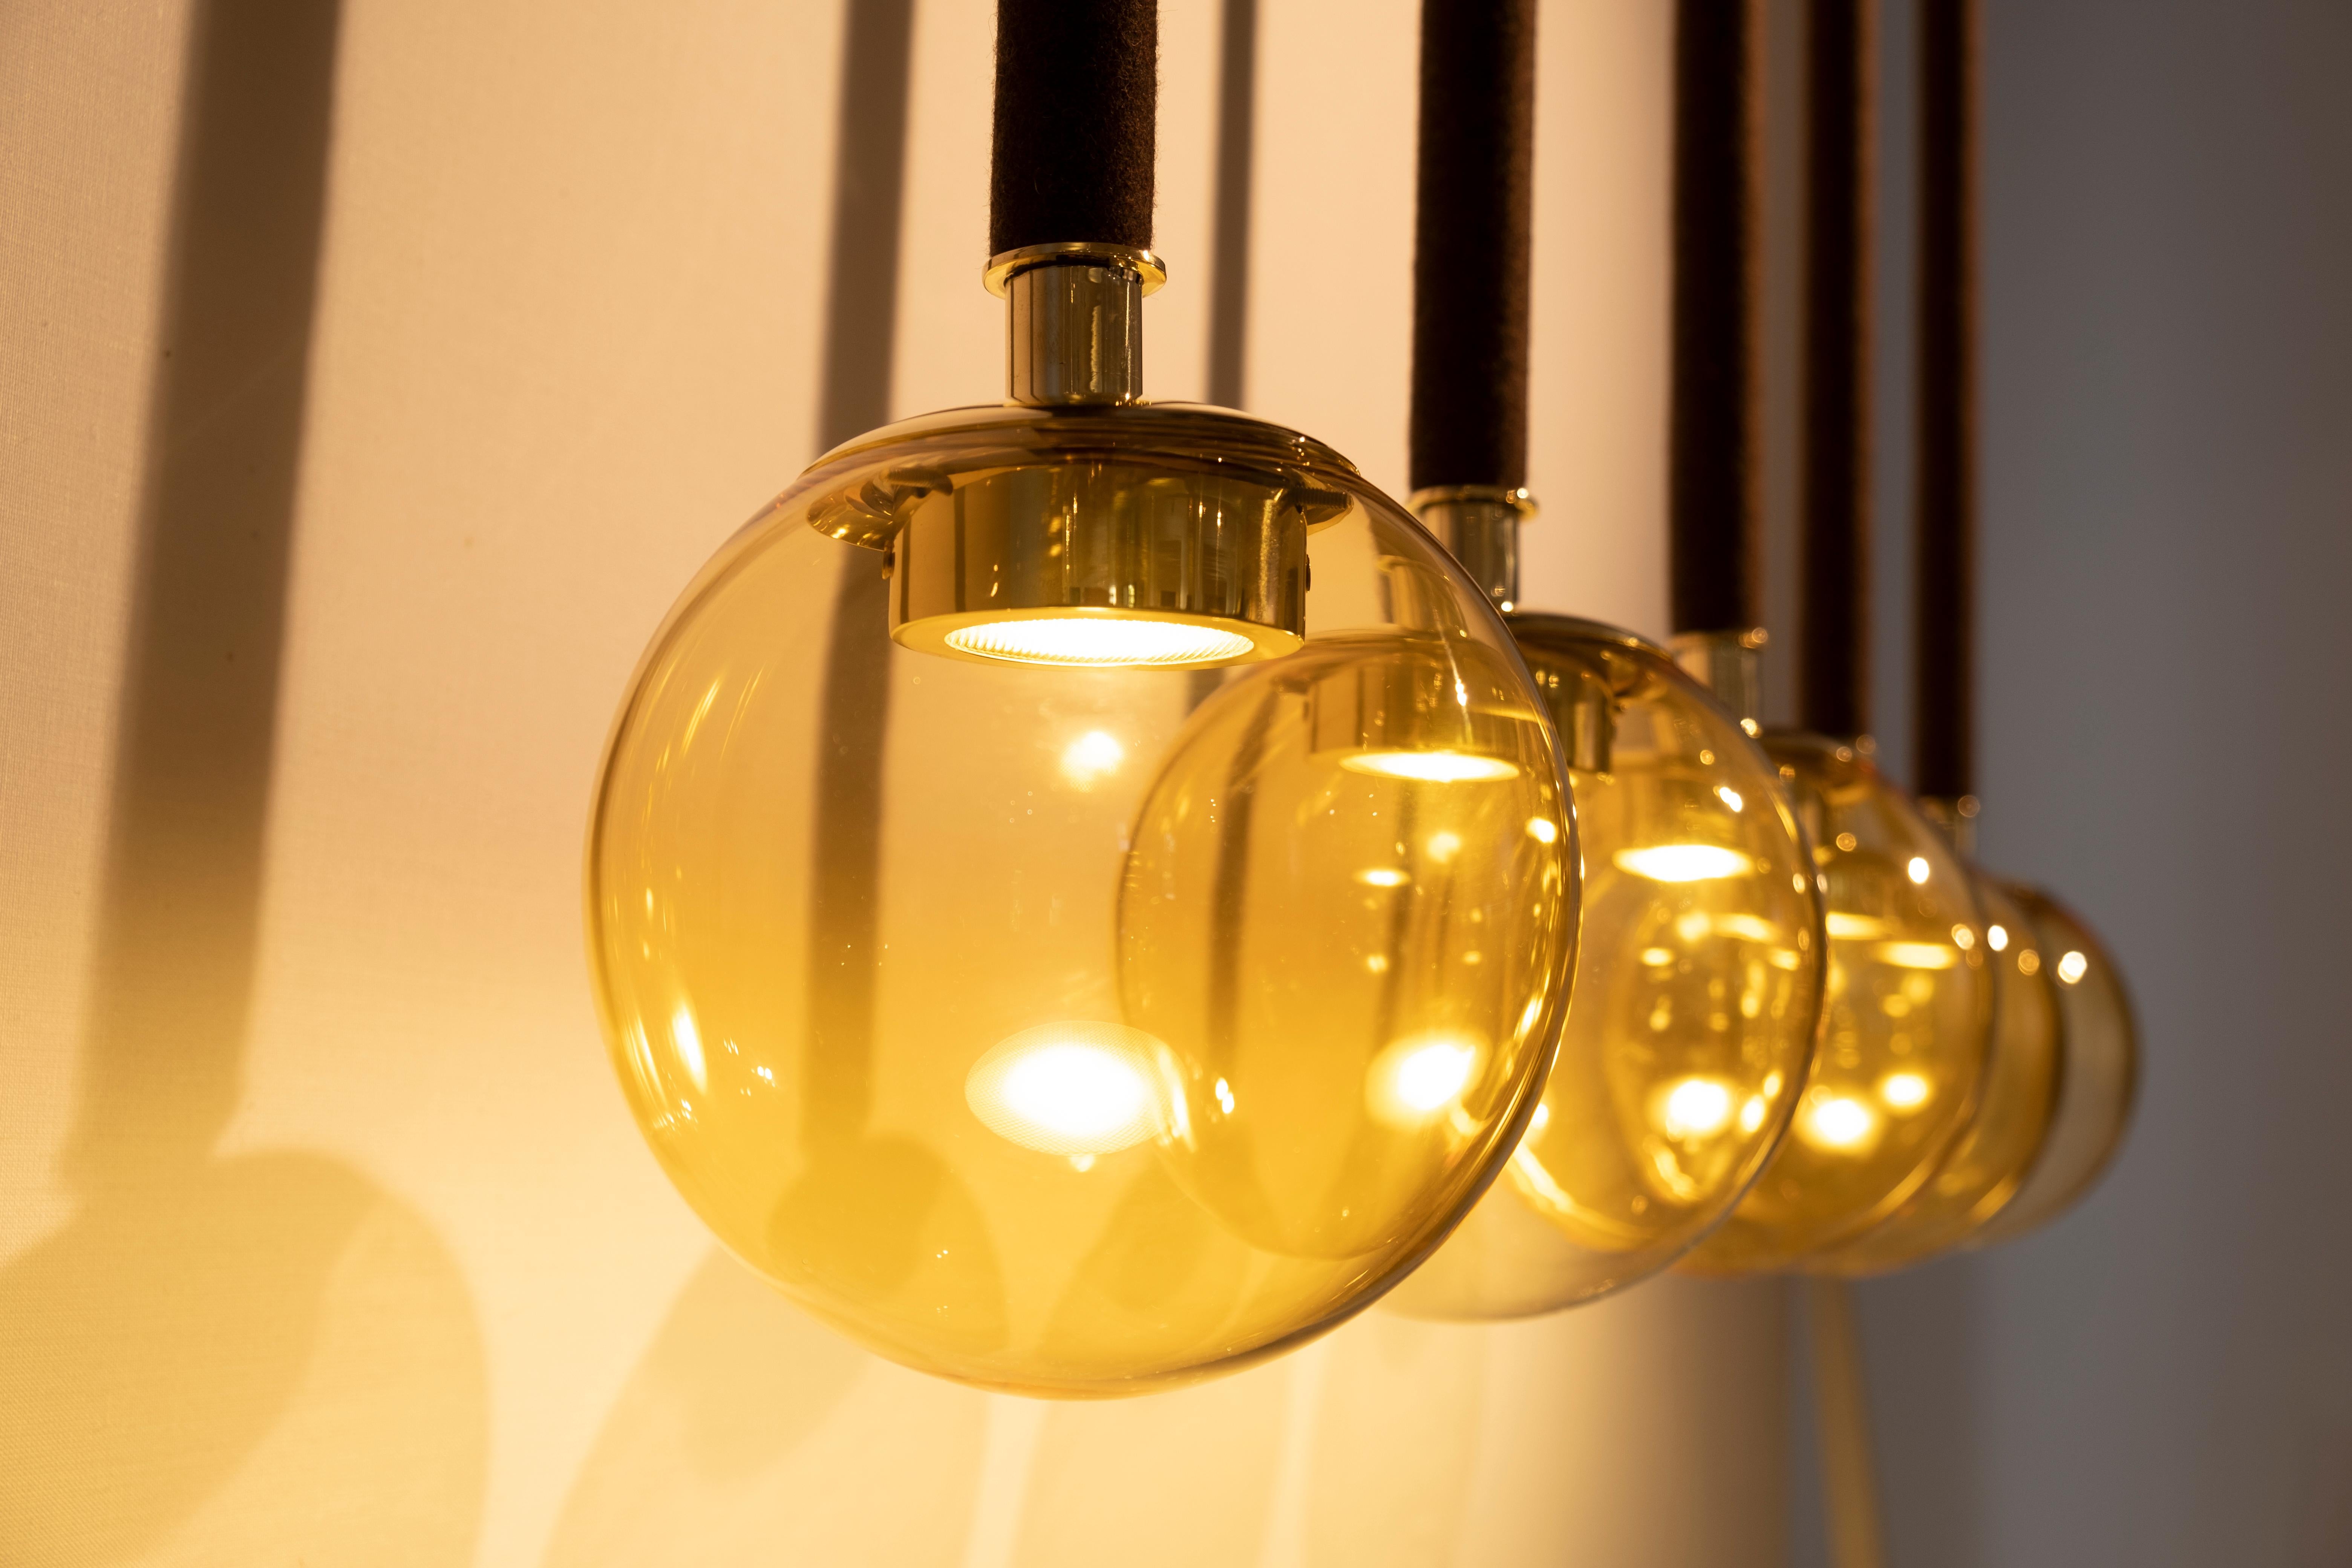 21ème siècle Filippo Feroldi Suspension 5 lampes en verre de Murano et laiton de différentes couleurs.
Conçu par Filippo Feroldi pour Purho et Colleoni Arte, Magus 5 est un lustre composé de cinq sphères en verre soufflé de Murano de 18 cm chacune